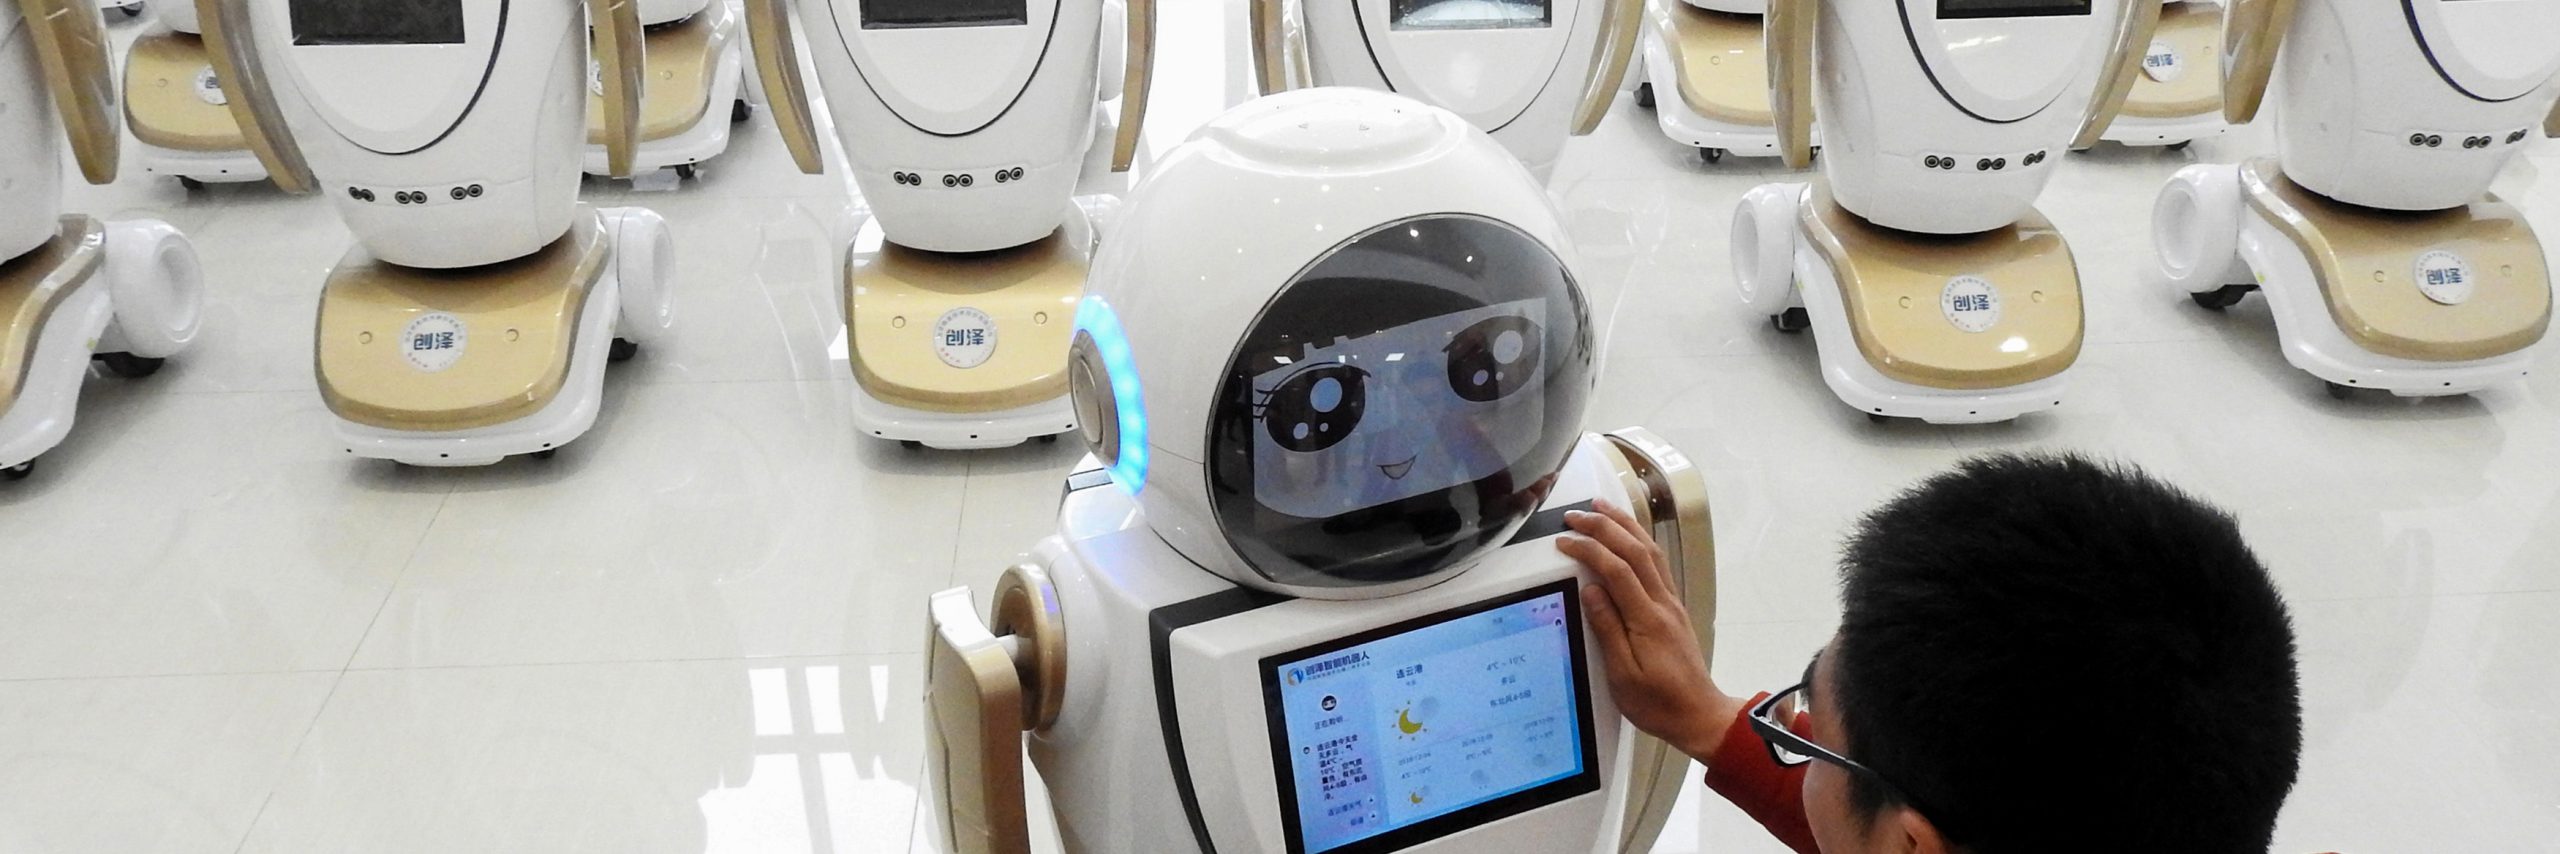 CHINA-TECHNOLOGY-ROBOTS